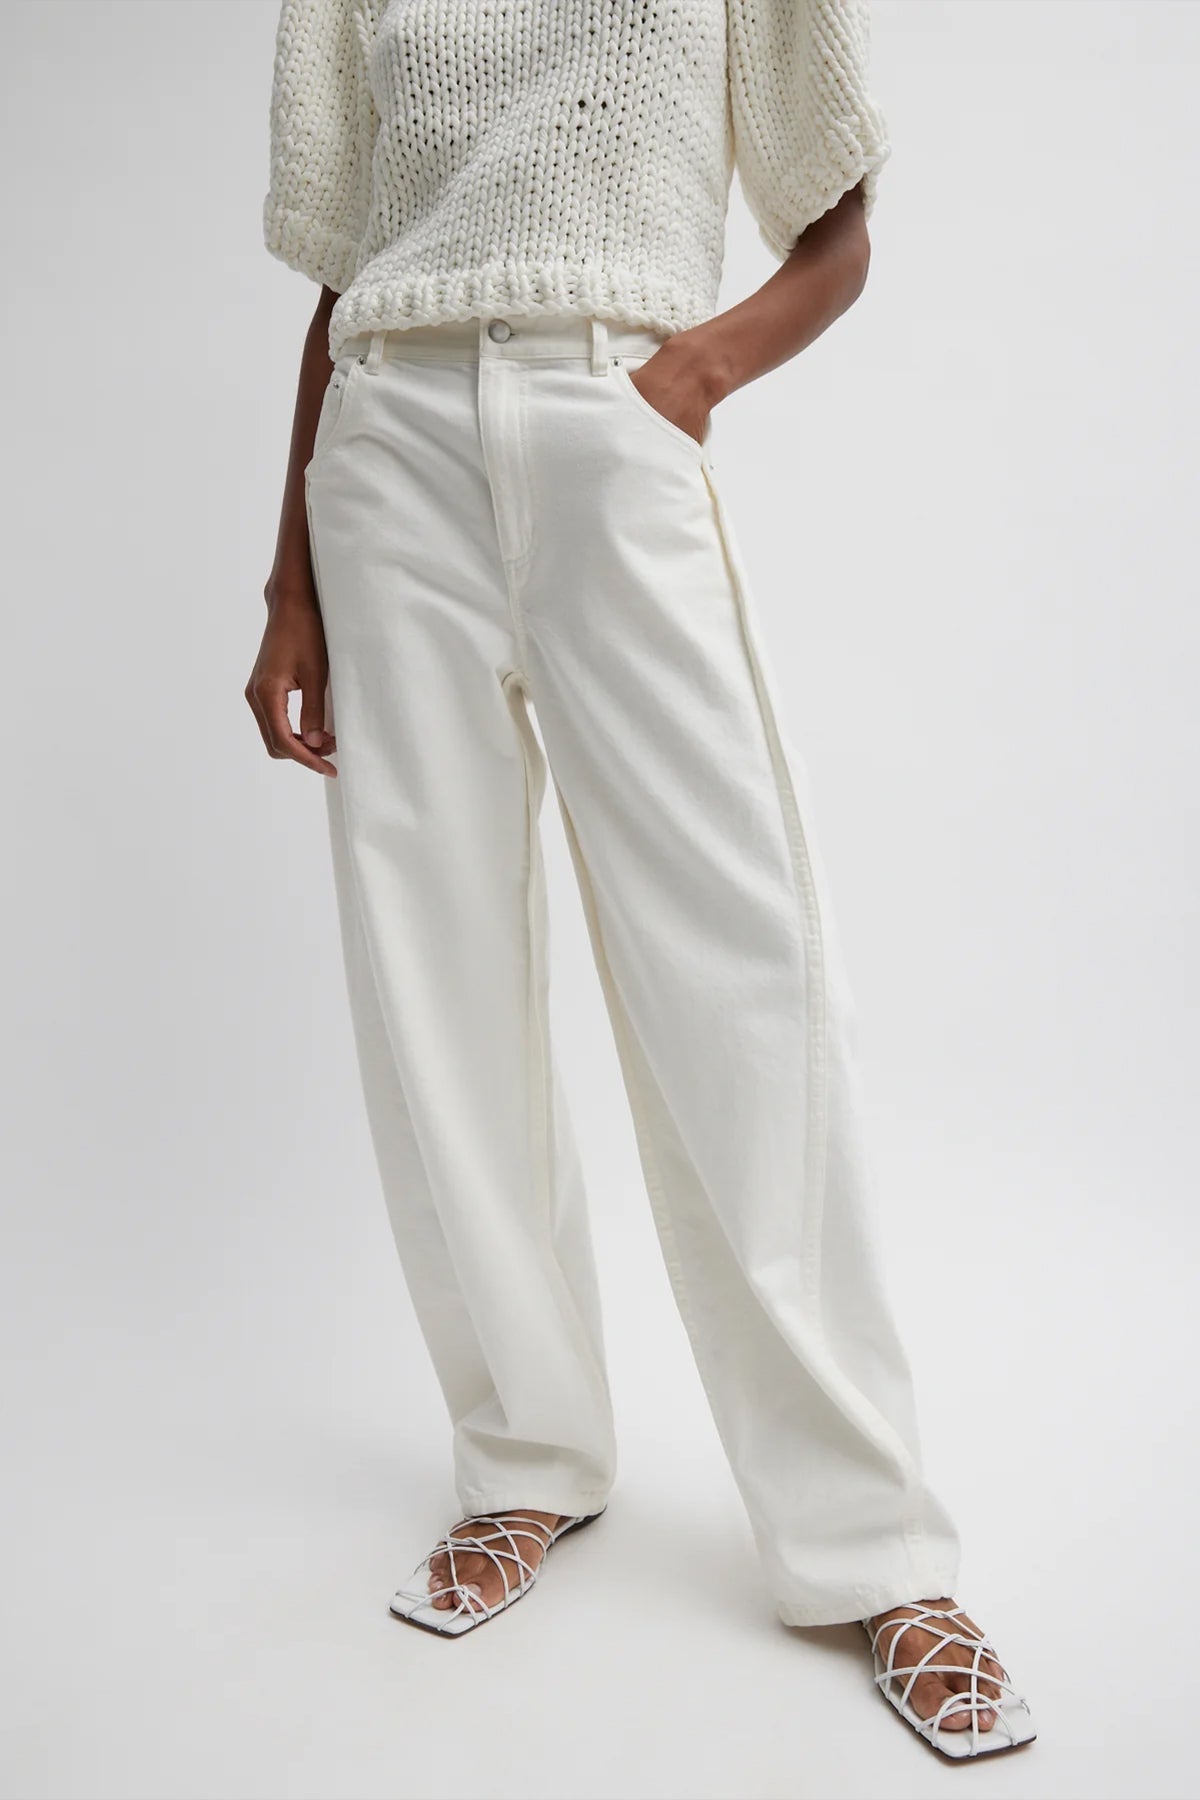 Spring Denim Tuck Jean (Short) in White - shop-olivia.com